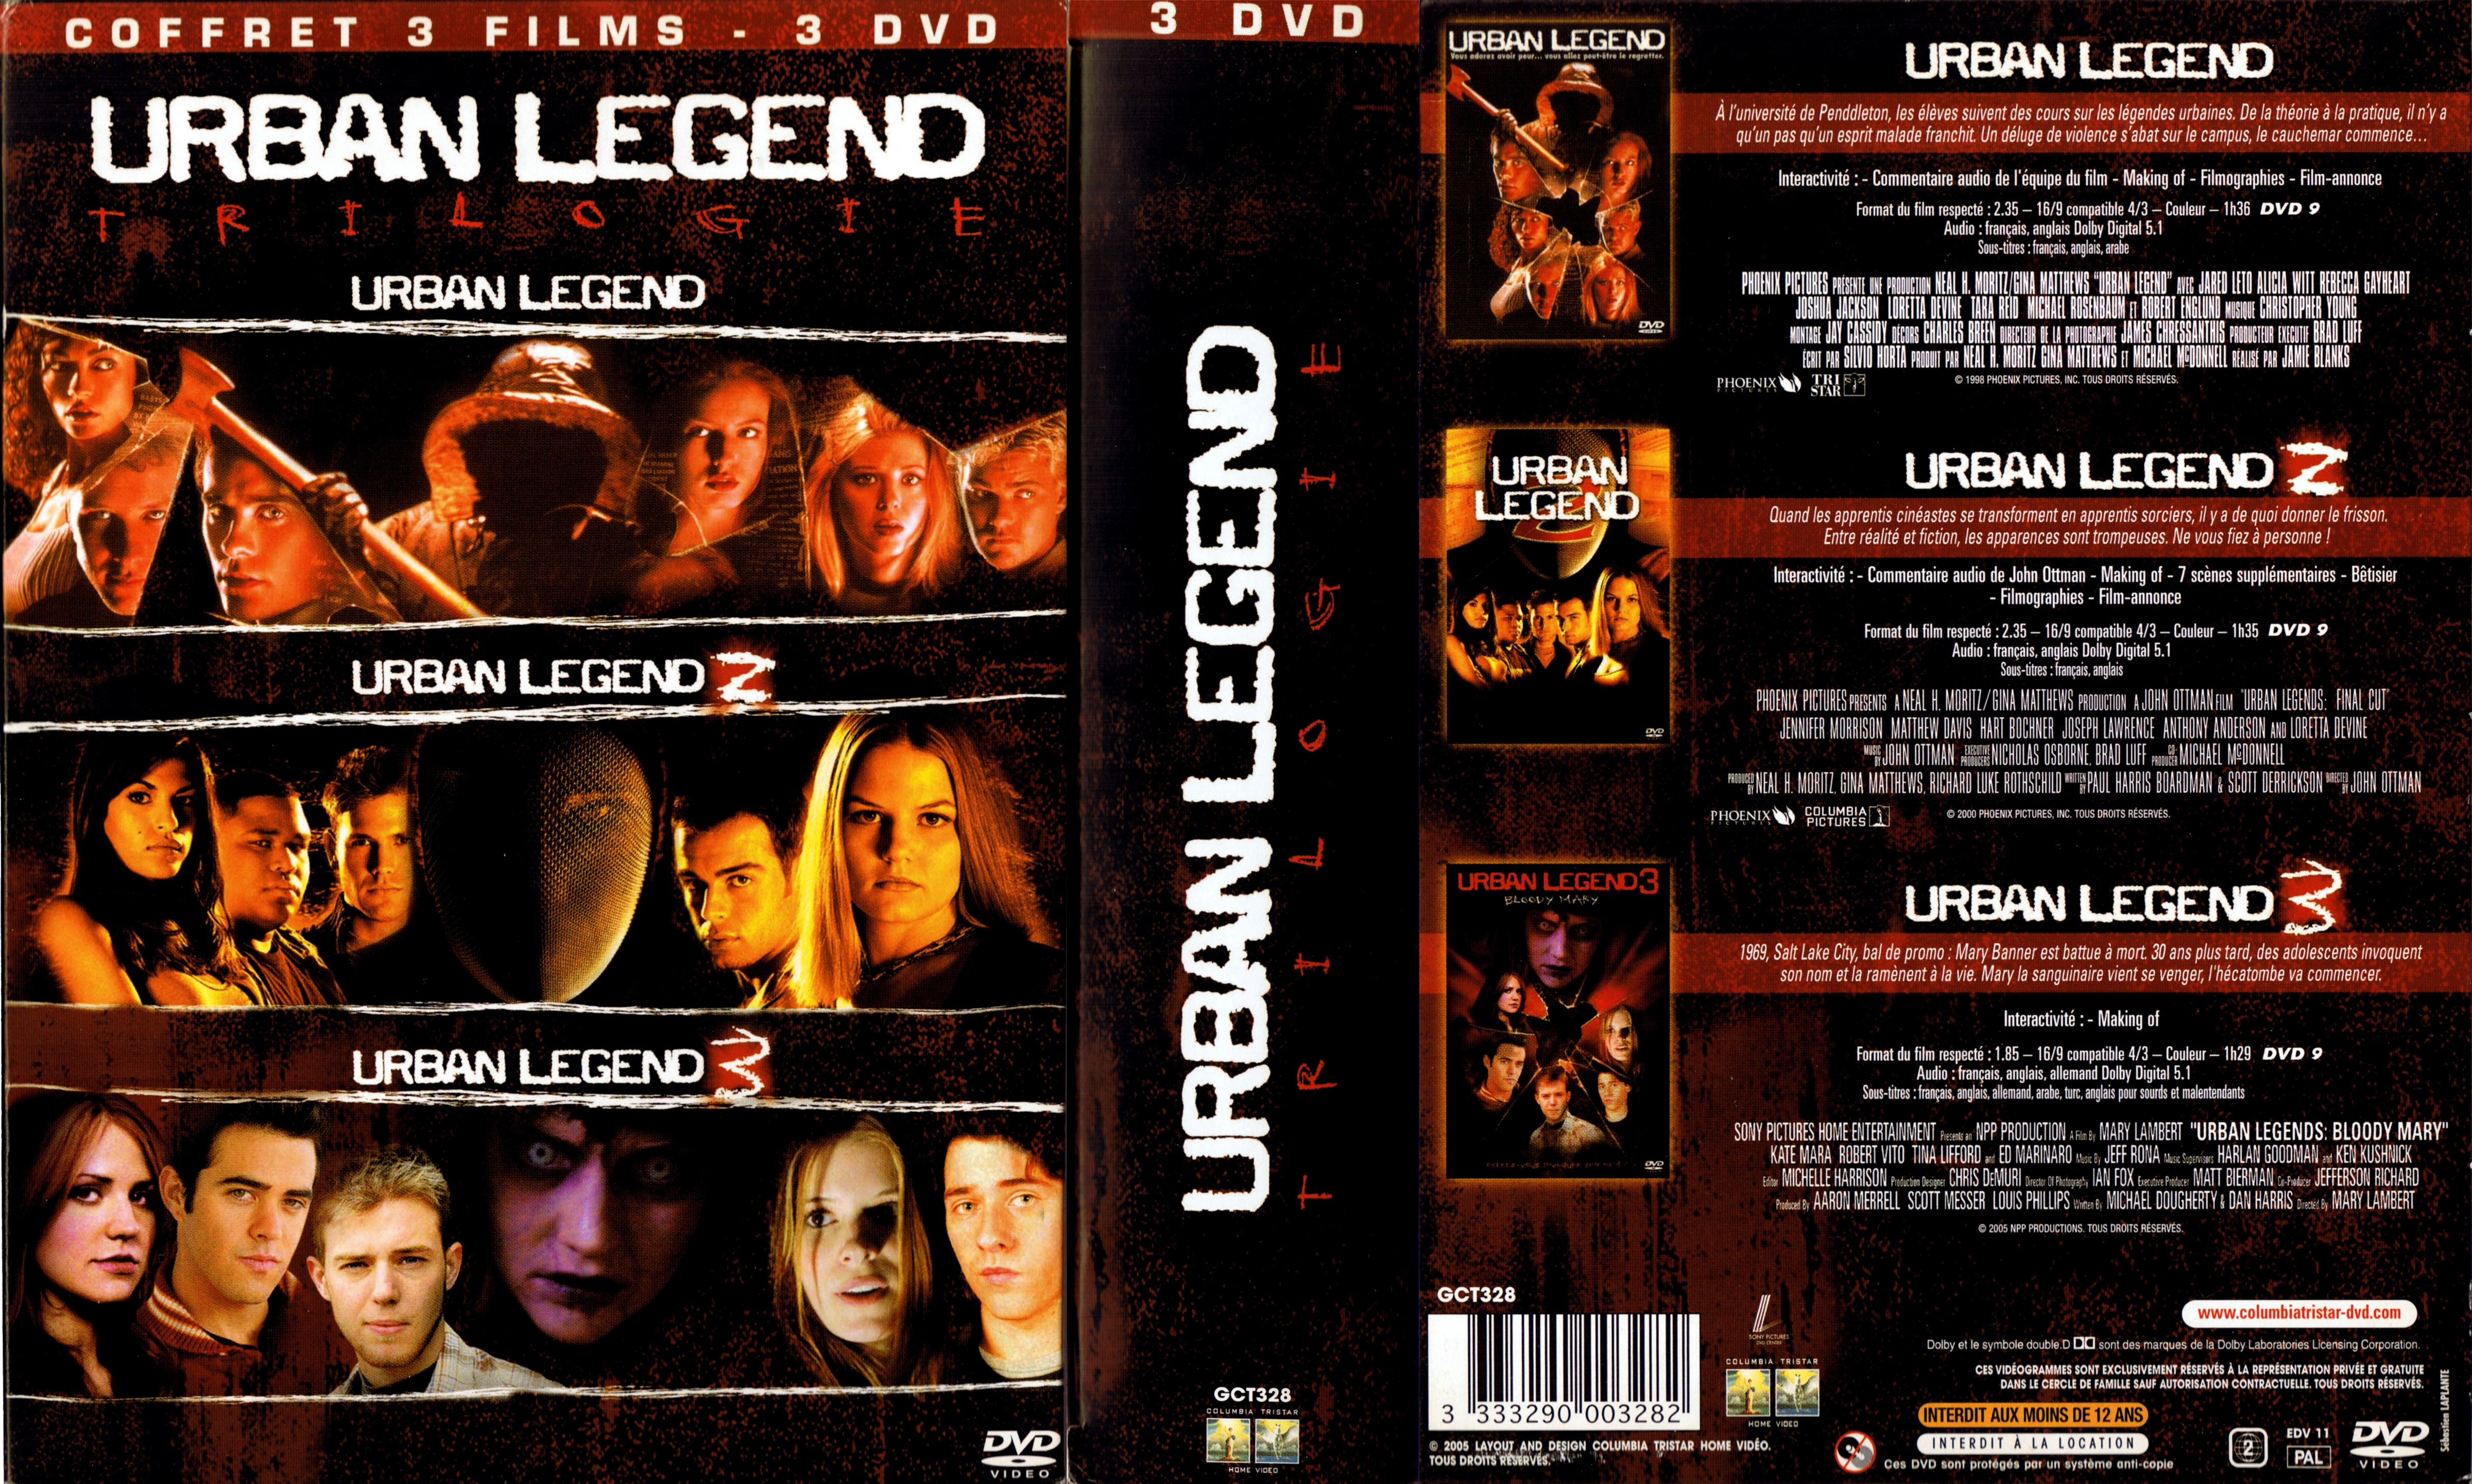 Jaquette DVD Urban legend COFFRET